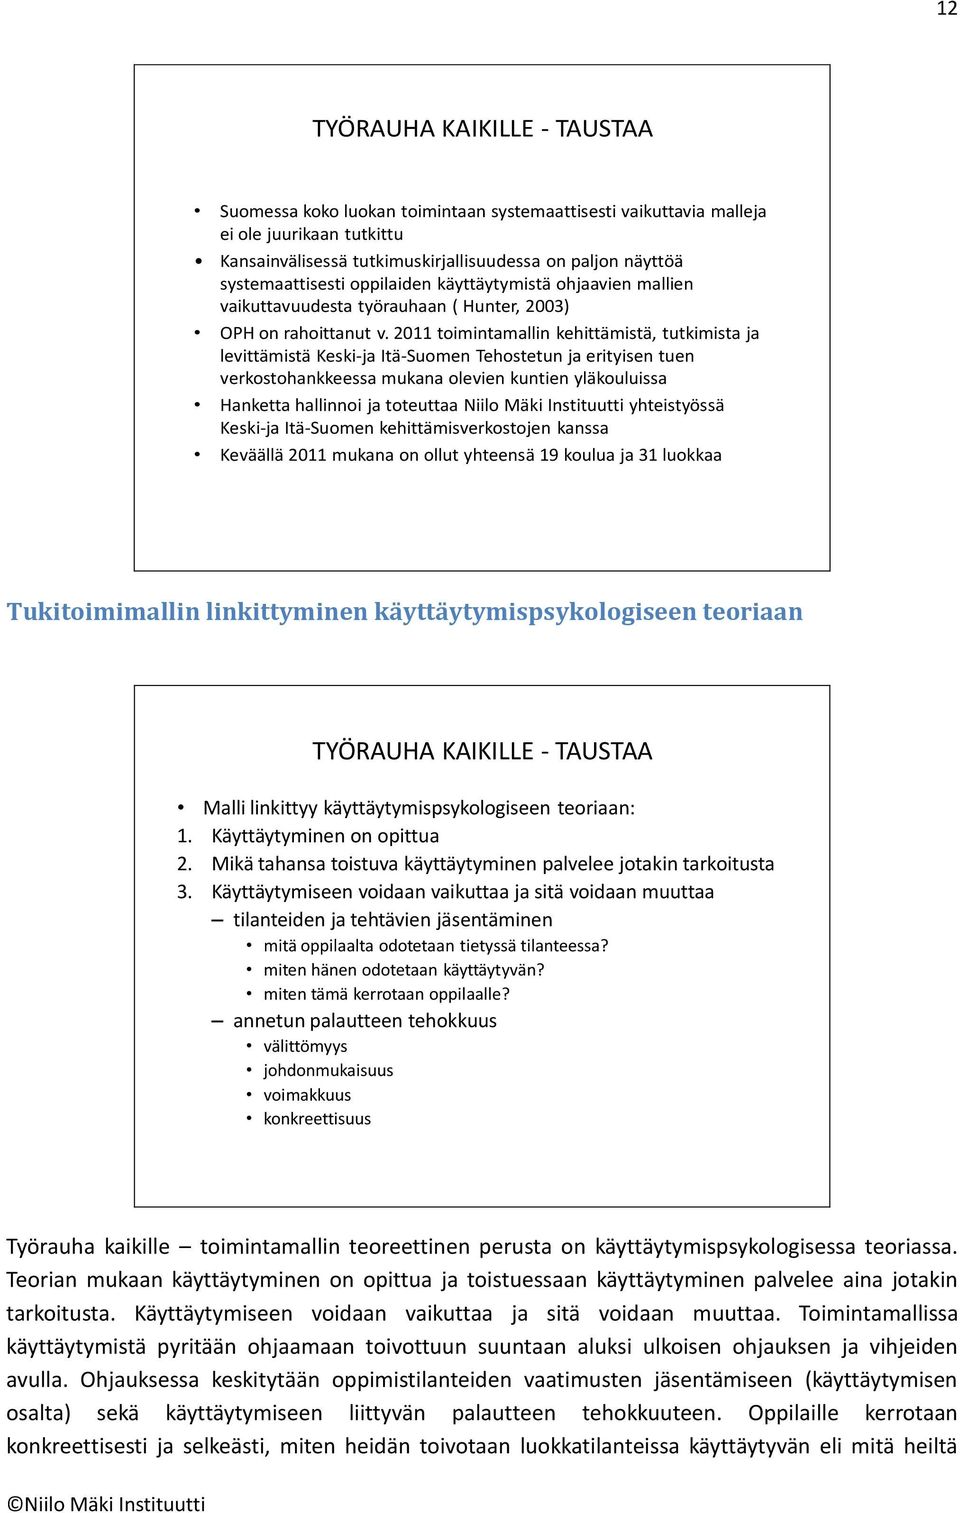 2011 toimintamallin kehittämistä, tutkimista ja levittämistä Keski-ja Itä-Suomen Tehostetun ja erityisen tuen verkostohankkeessa mukana olevien kuntien yläkouluissa Hanketta hallinnoi ja toteuttaa